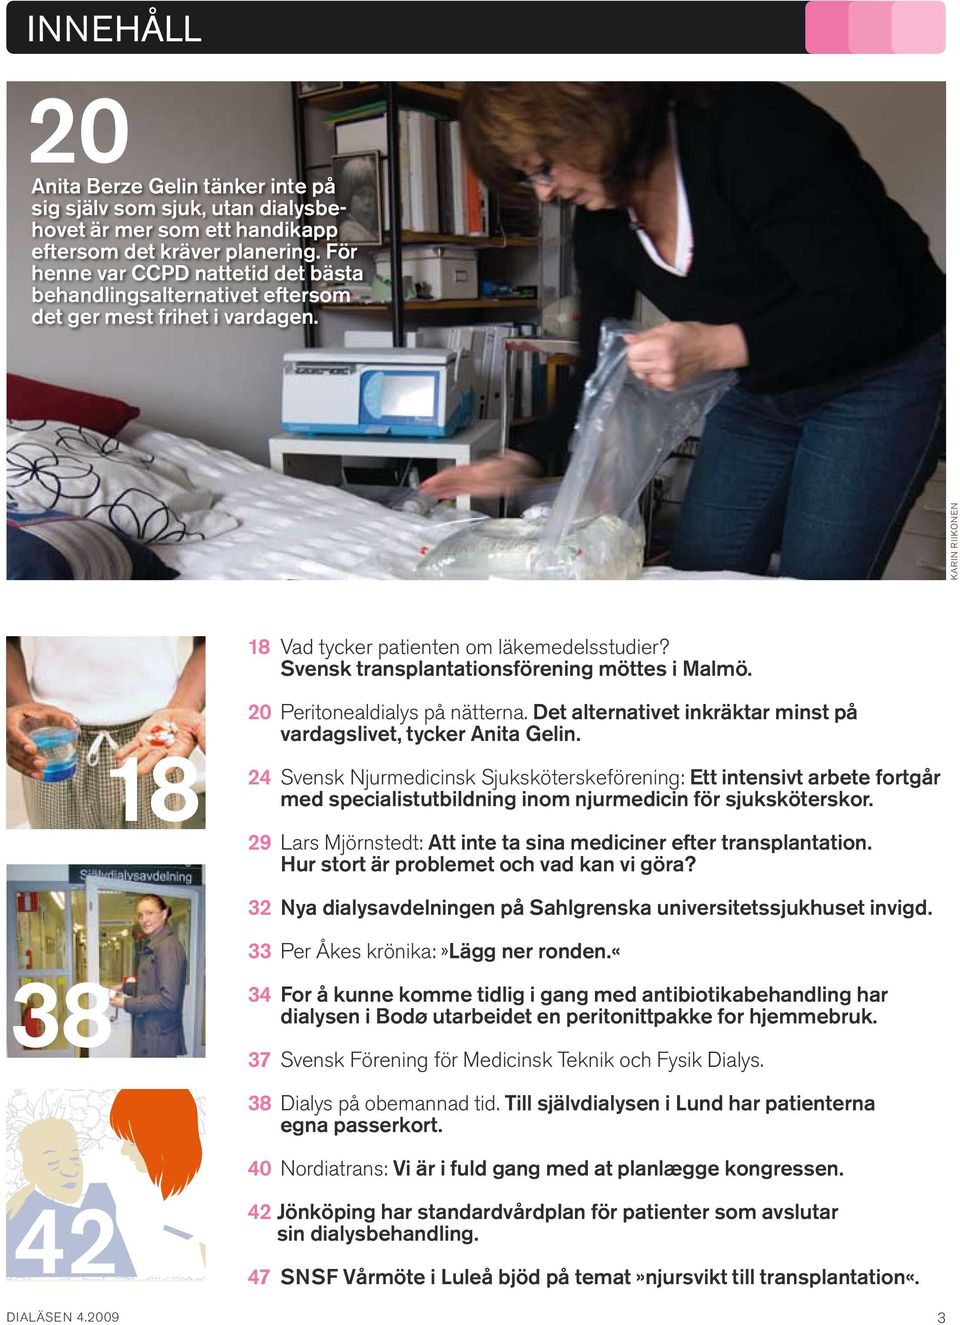 Svensk transplantations förening möttes i Malmö. 18 20 Peritonealdialys på nätterna. Det alternativet inkräktar minst på vardagslivet, tycker Anita Gelin.